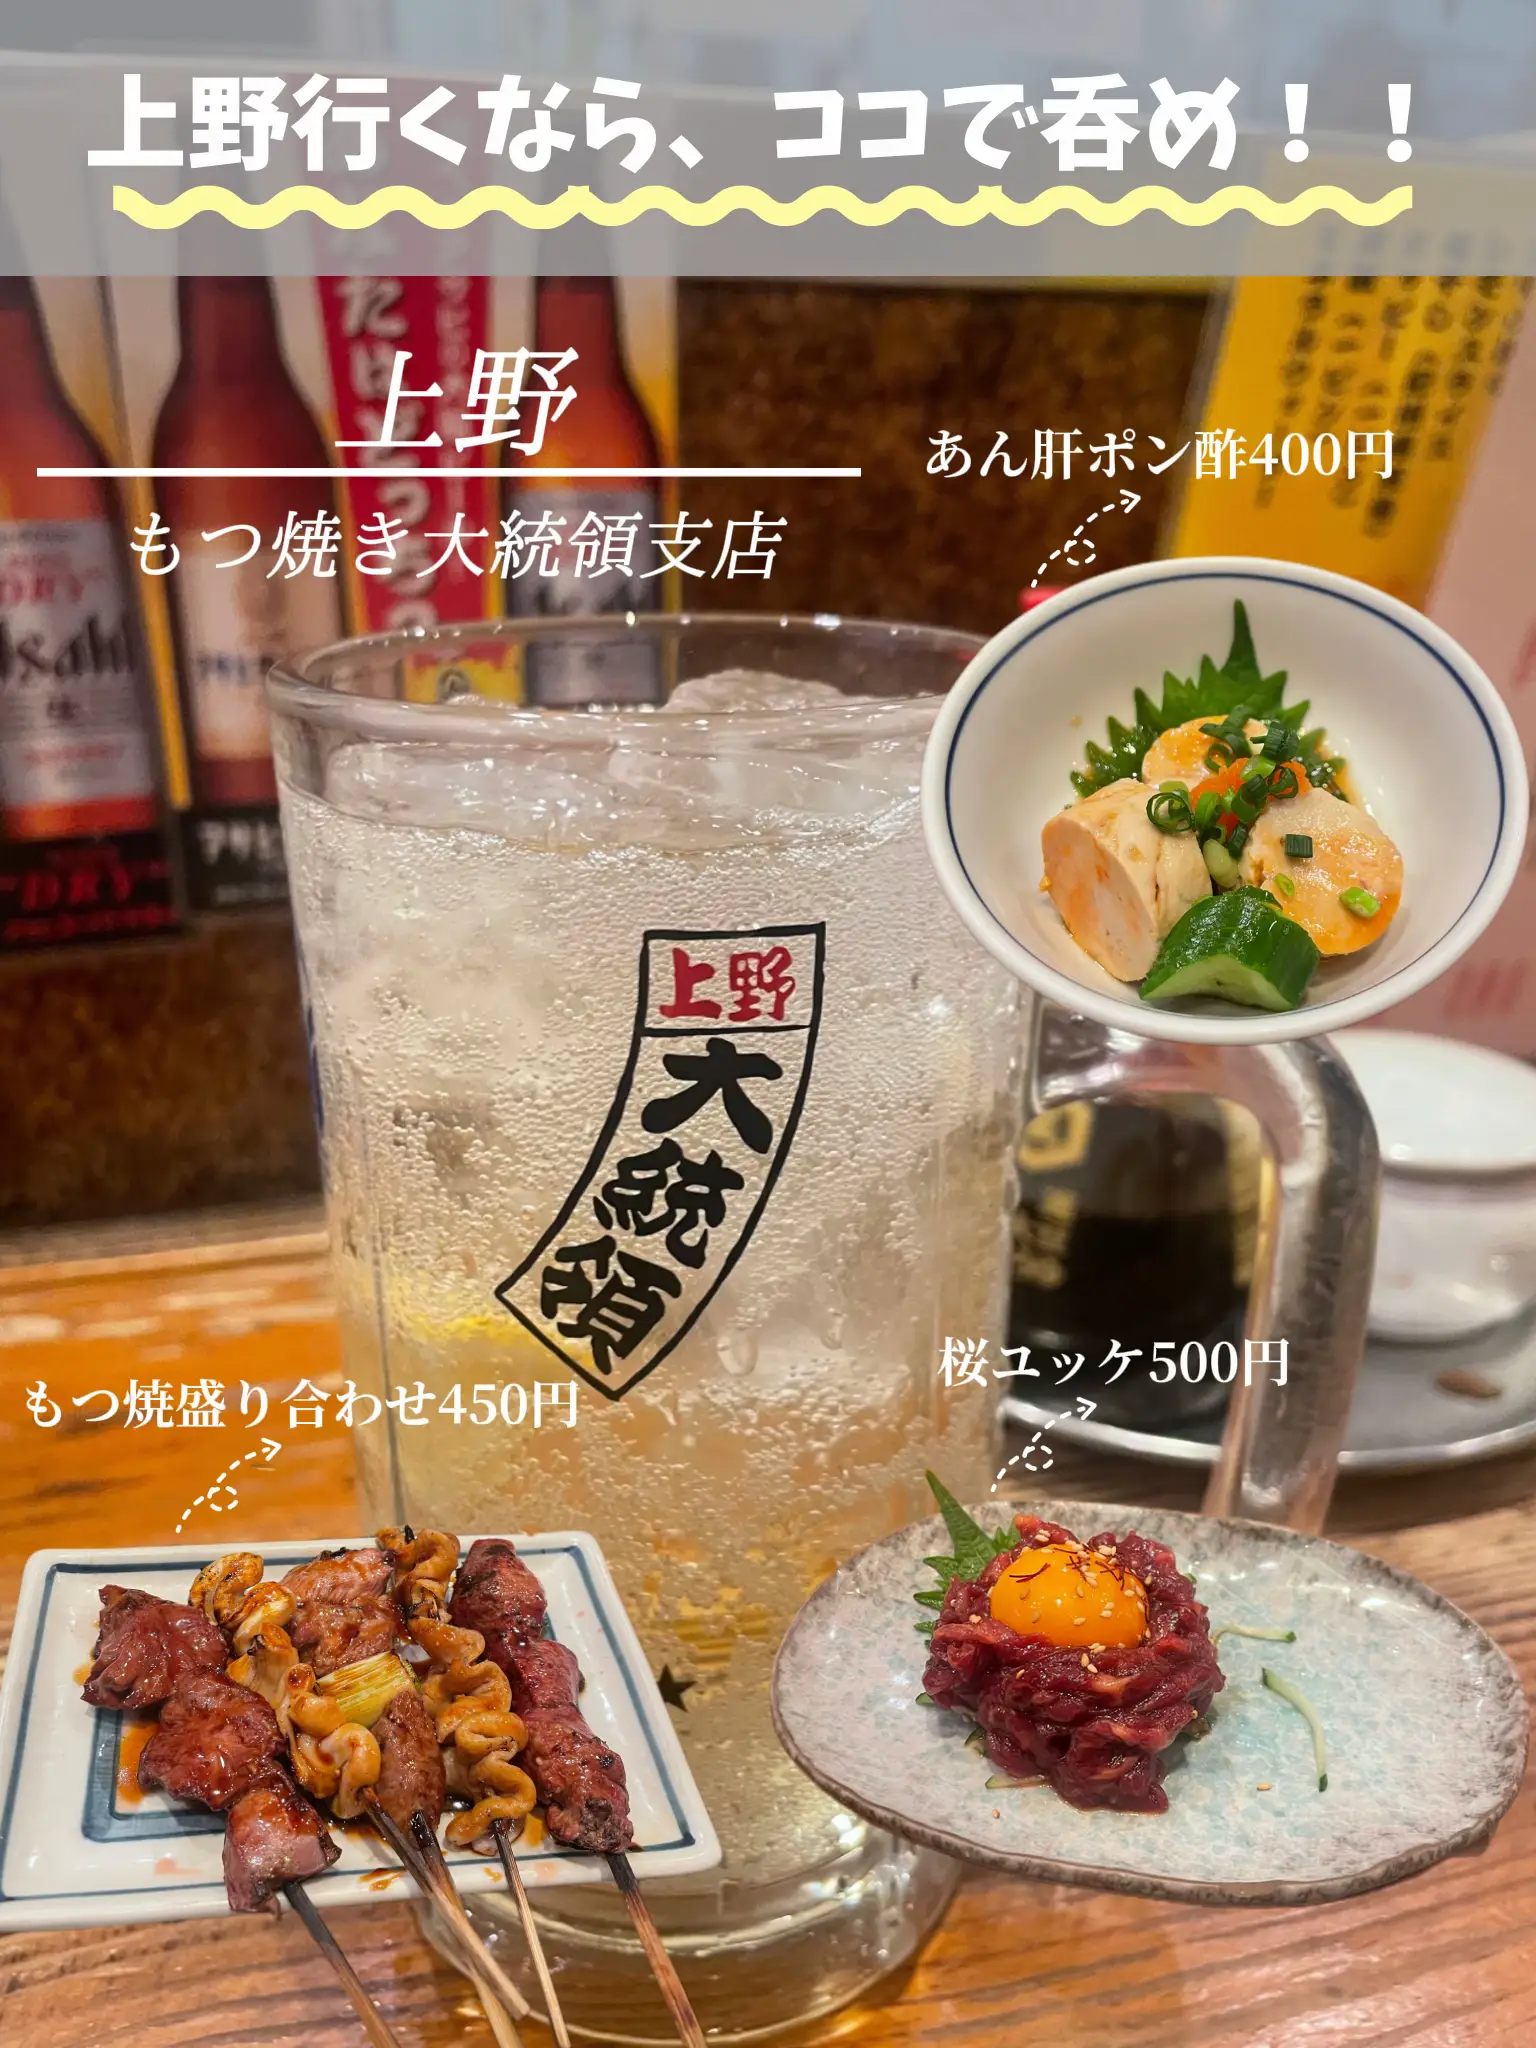 上野居酒屋大統領 - Lemon8検索